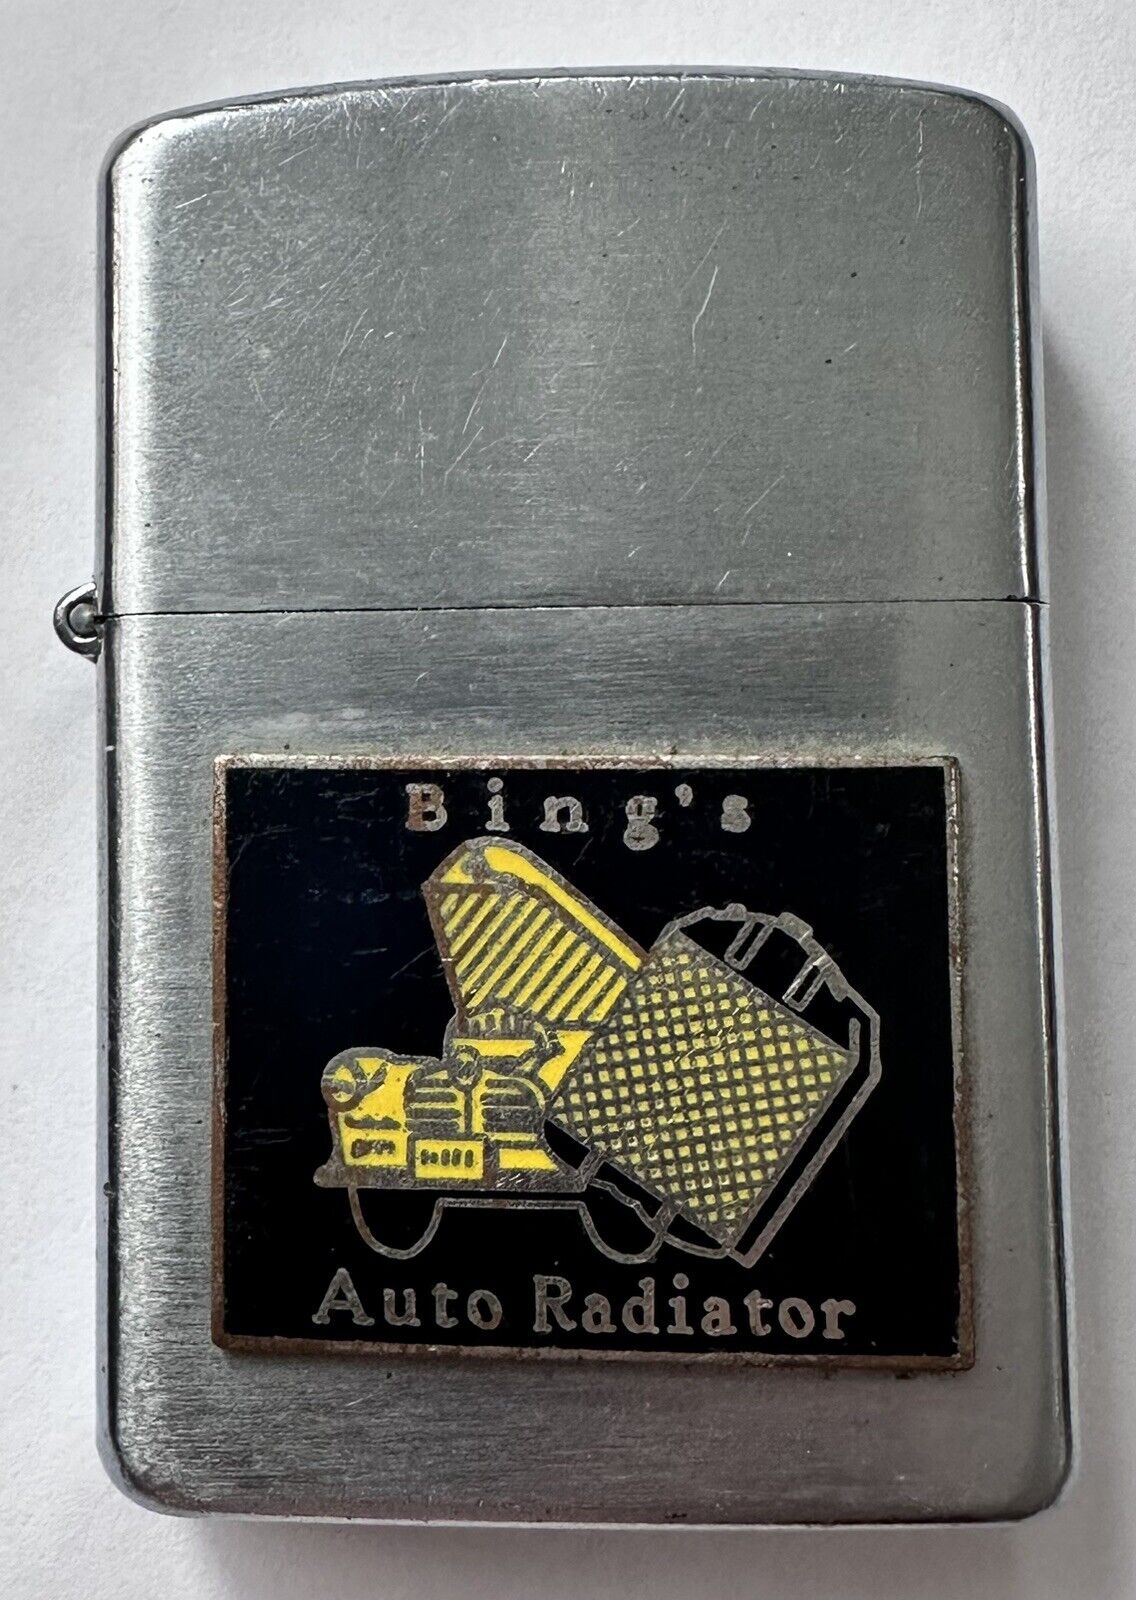 Bing’s Auto Radiator Idealine Lighter Automotive Car Racing Automobile Hotrod